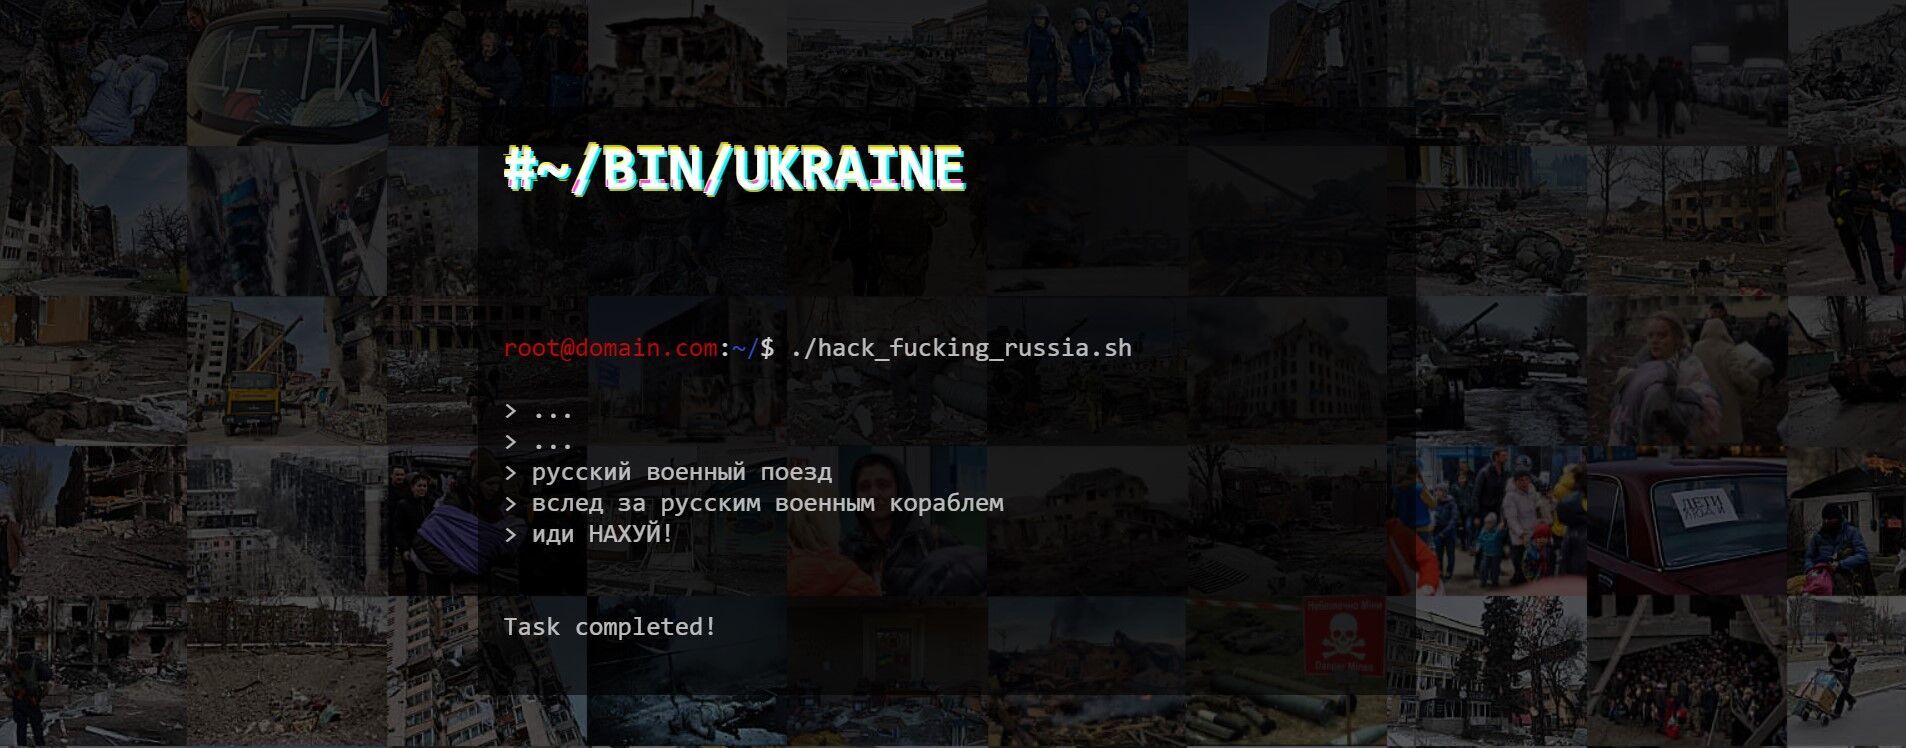 Послание русским военным поездам от украинских хакеров